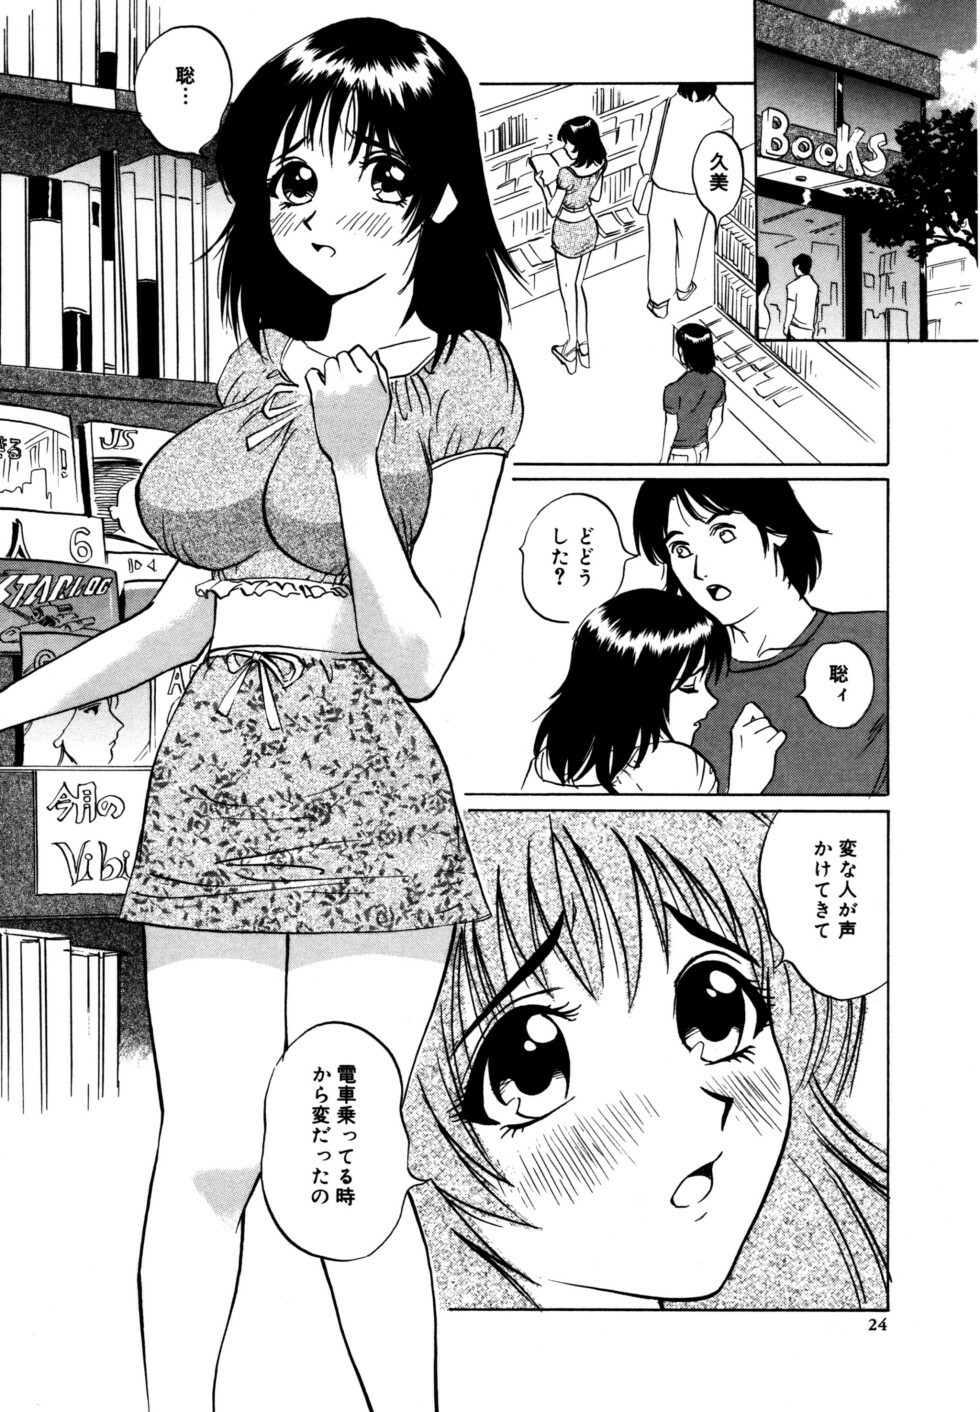 [Shirogane Anjyu] Nukumori No Kioku page 24 full